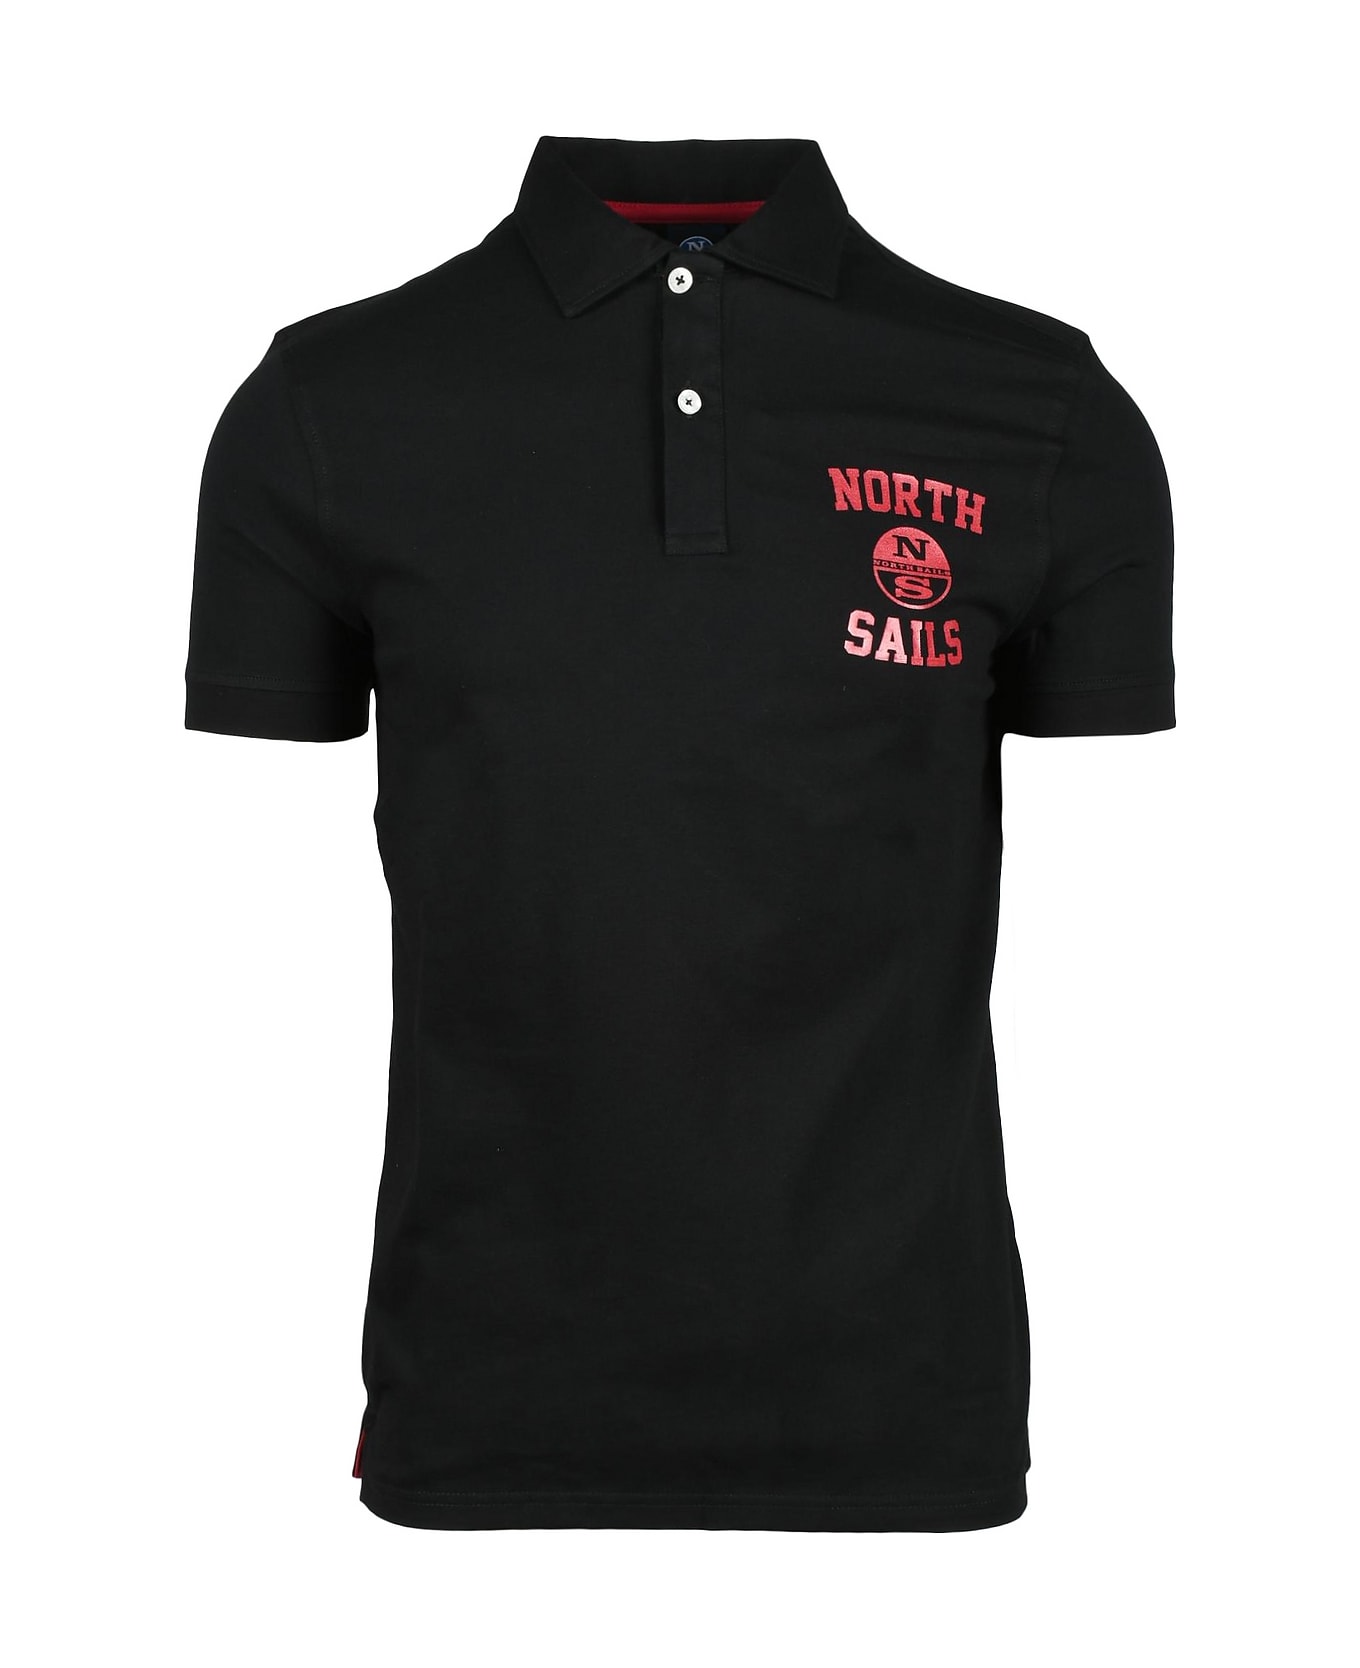 North Sails Men's Black Shirt - Black